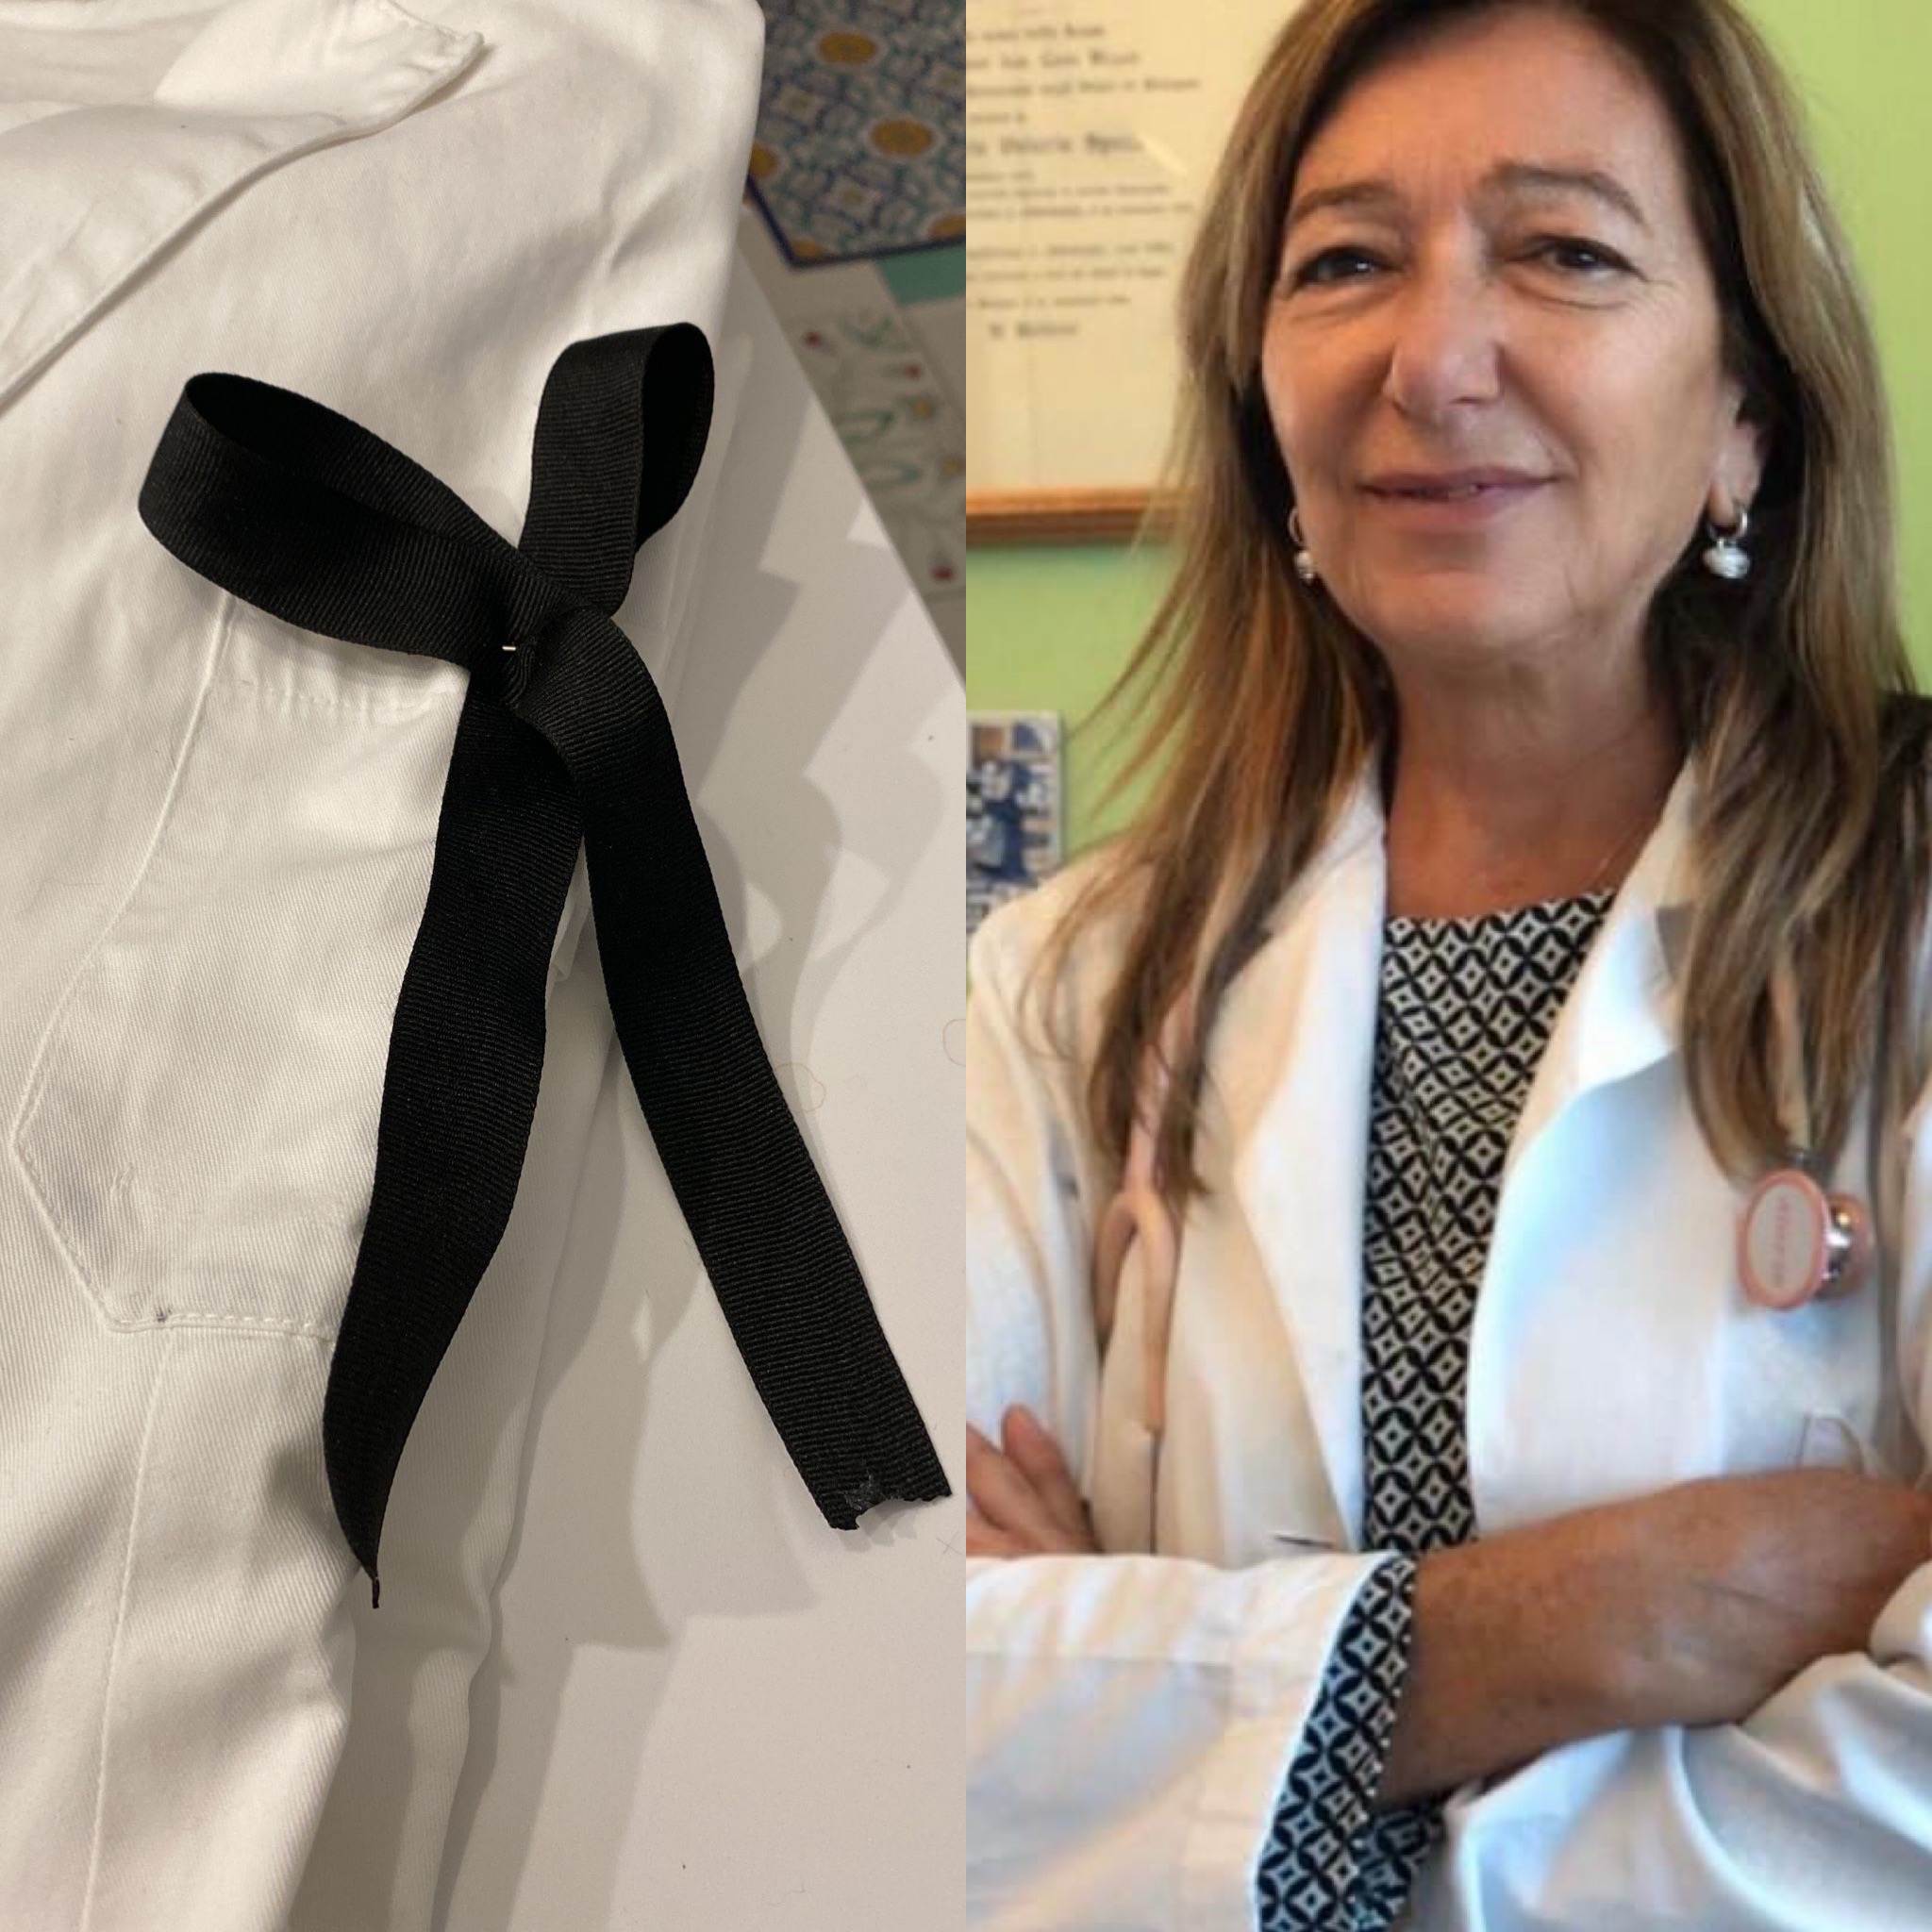 Psichiatra  uccisa all’ospedale di Pisa, appello dell’Associazione donne medico: «Basta violenza»